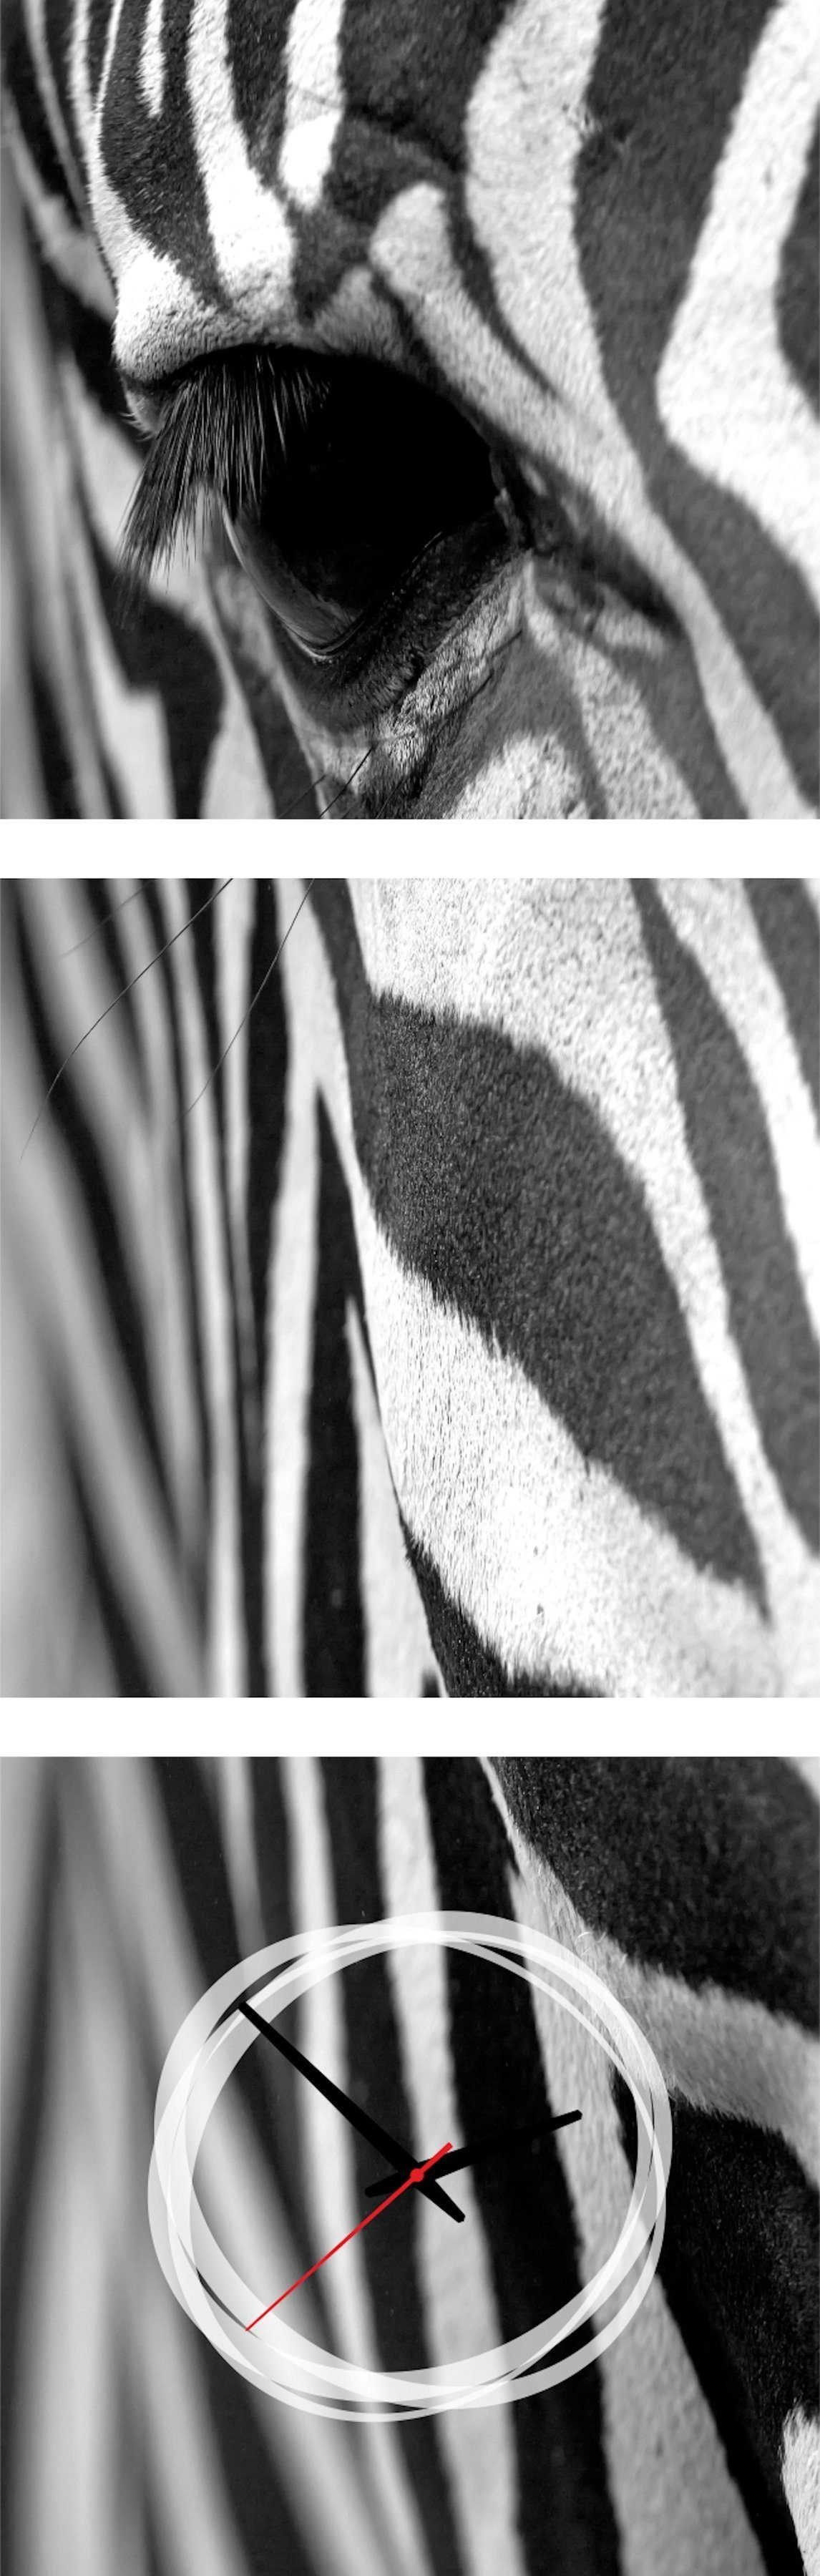 Conni Oberkircher´s Beeld met klok Zebra met decoratieve klok, zwart/wit, zebrastrepen, wilde dieren (set)